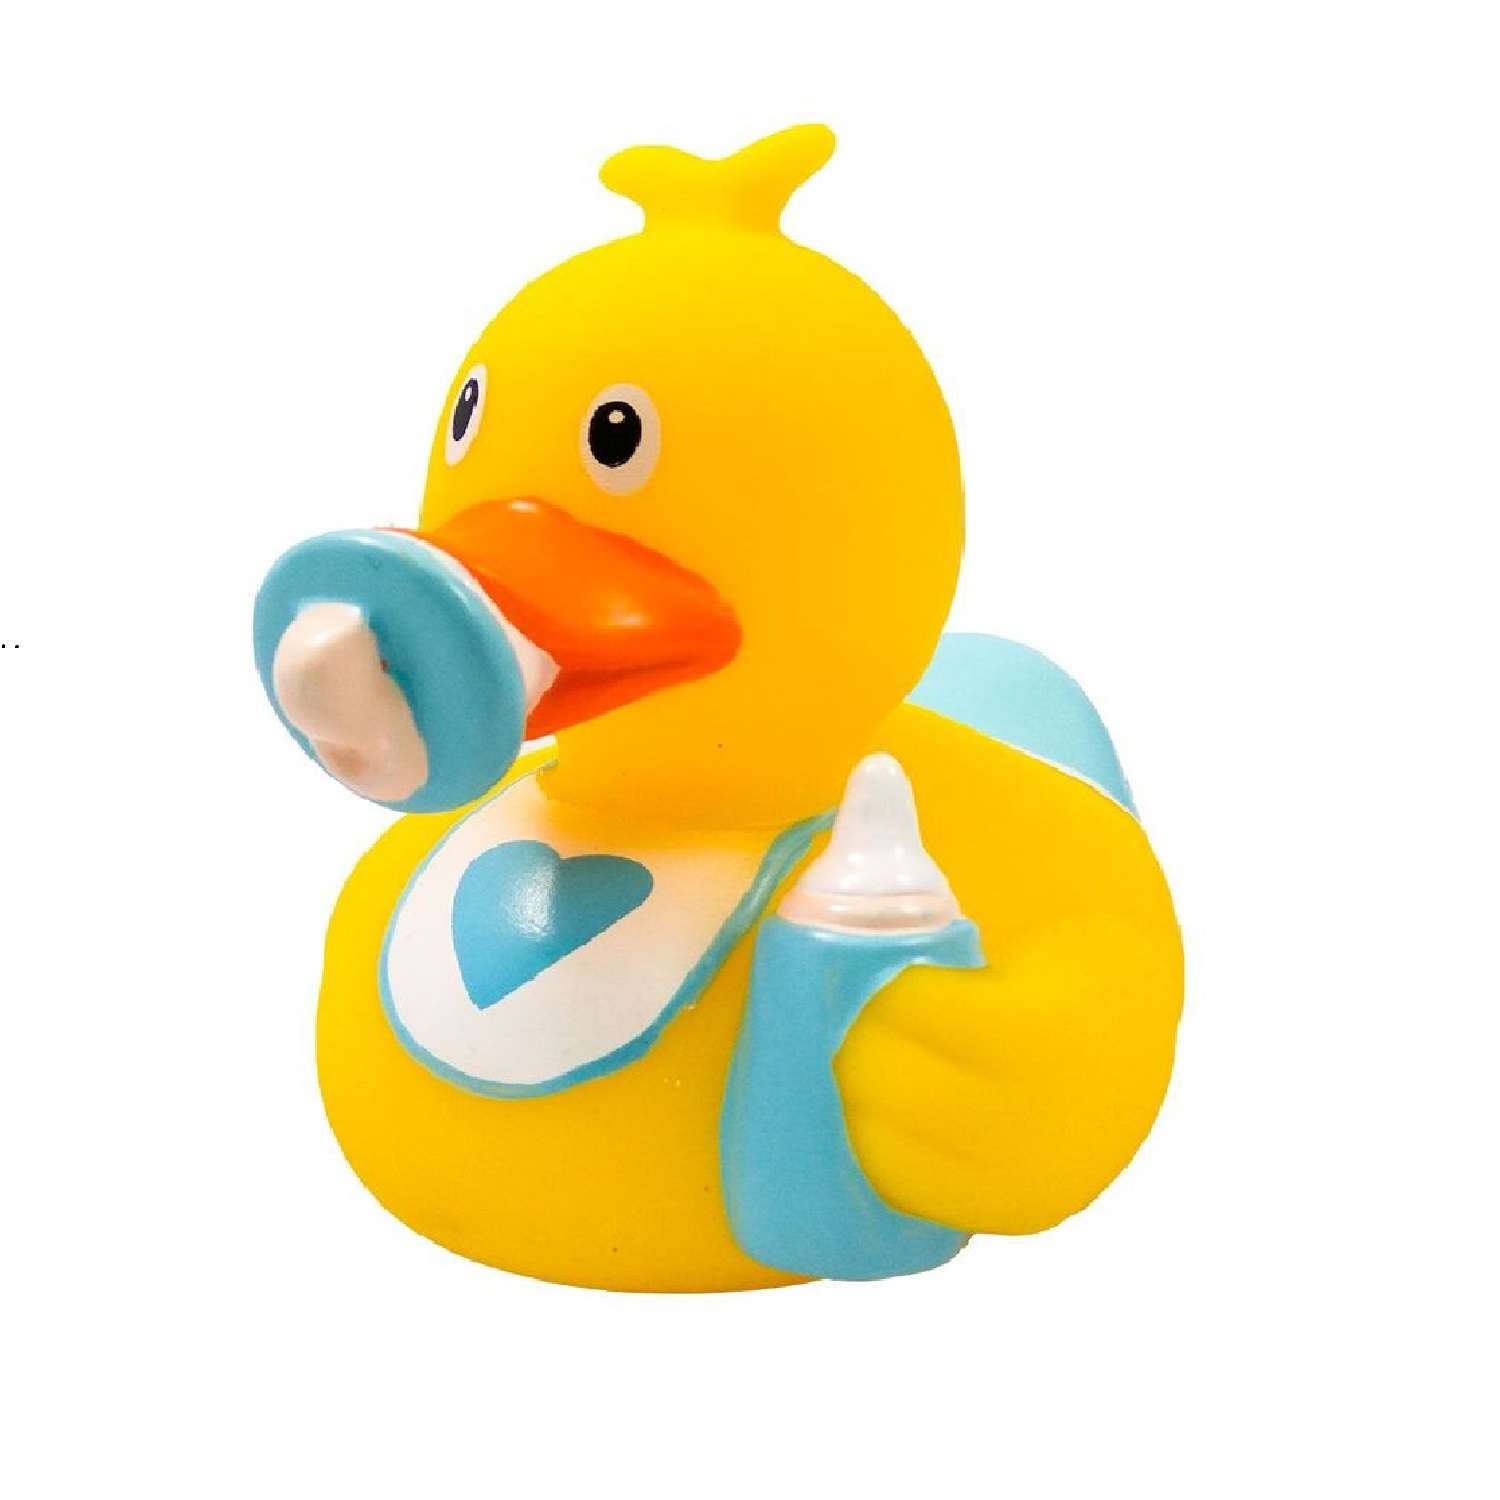 Игрушка Funny ducks для ванной Ребенок мальчик уточка 1849 - фото 1